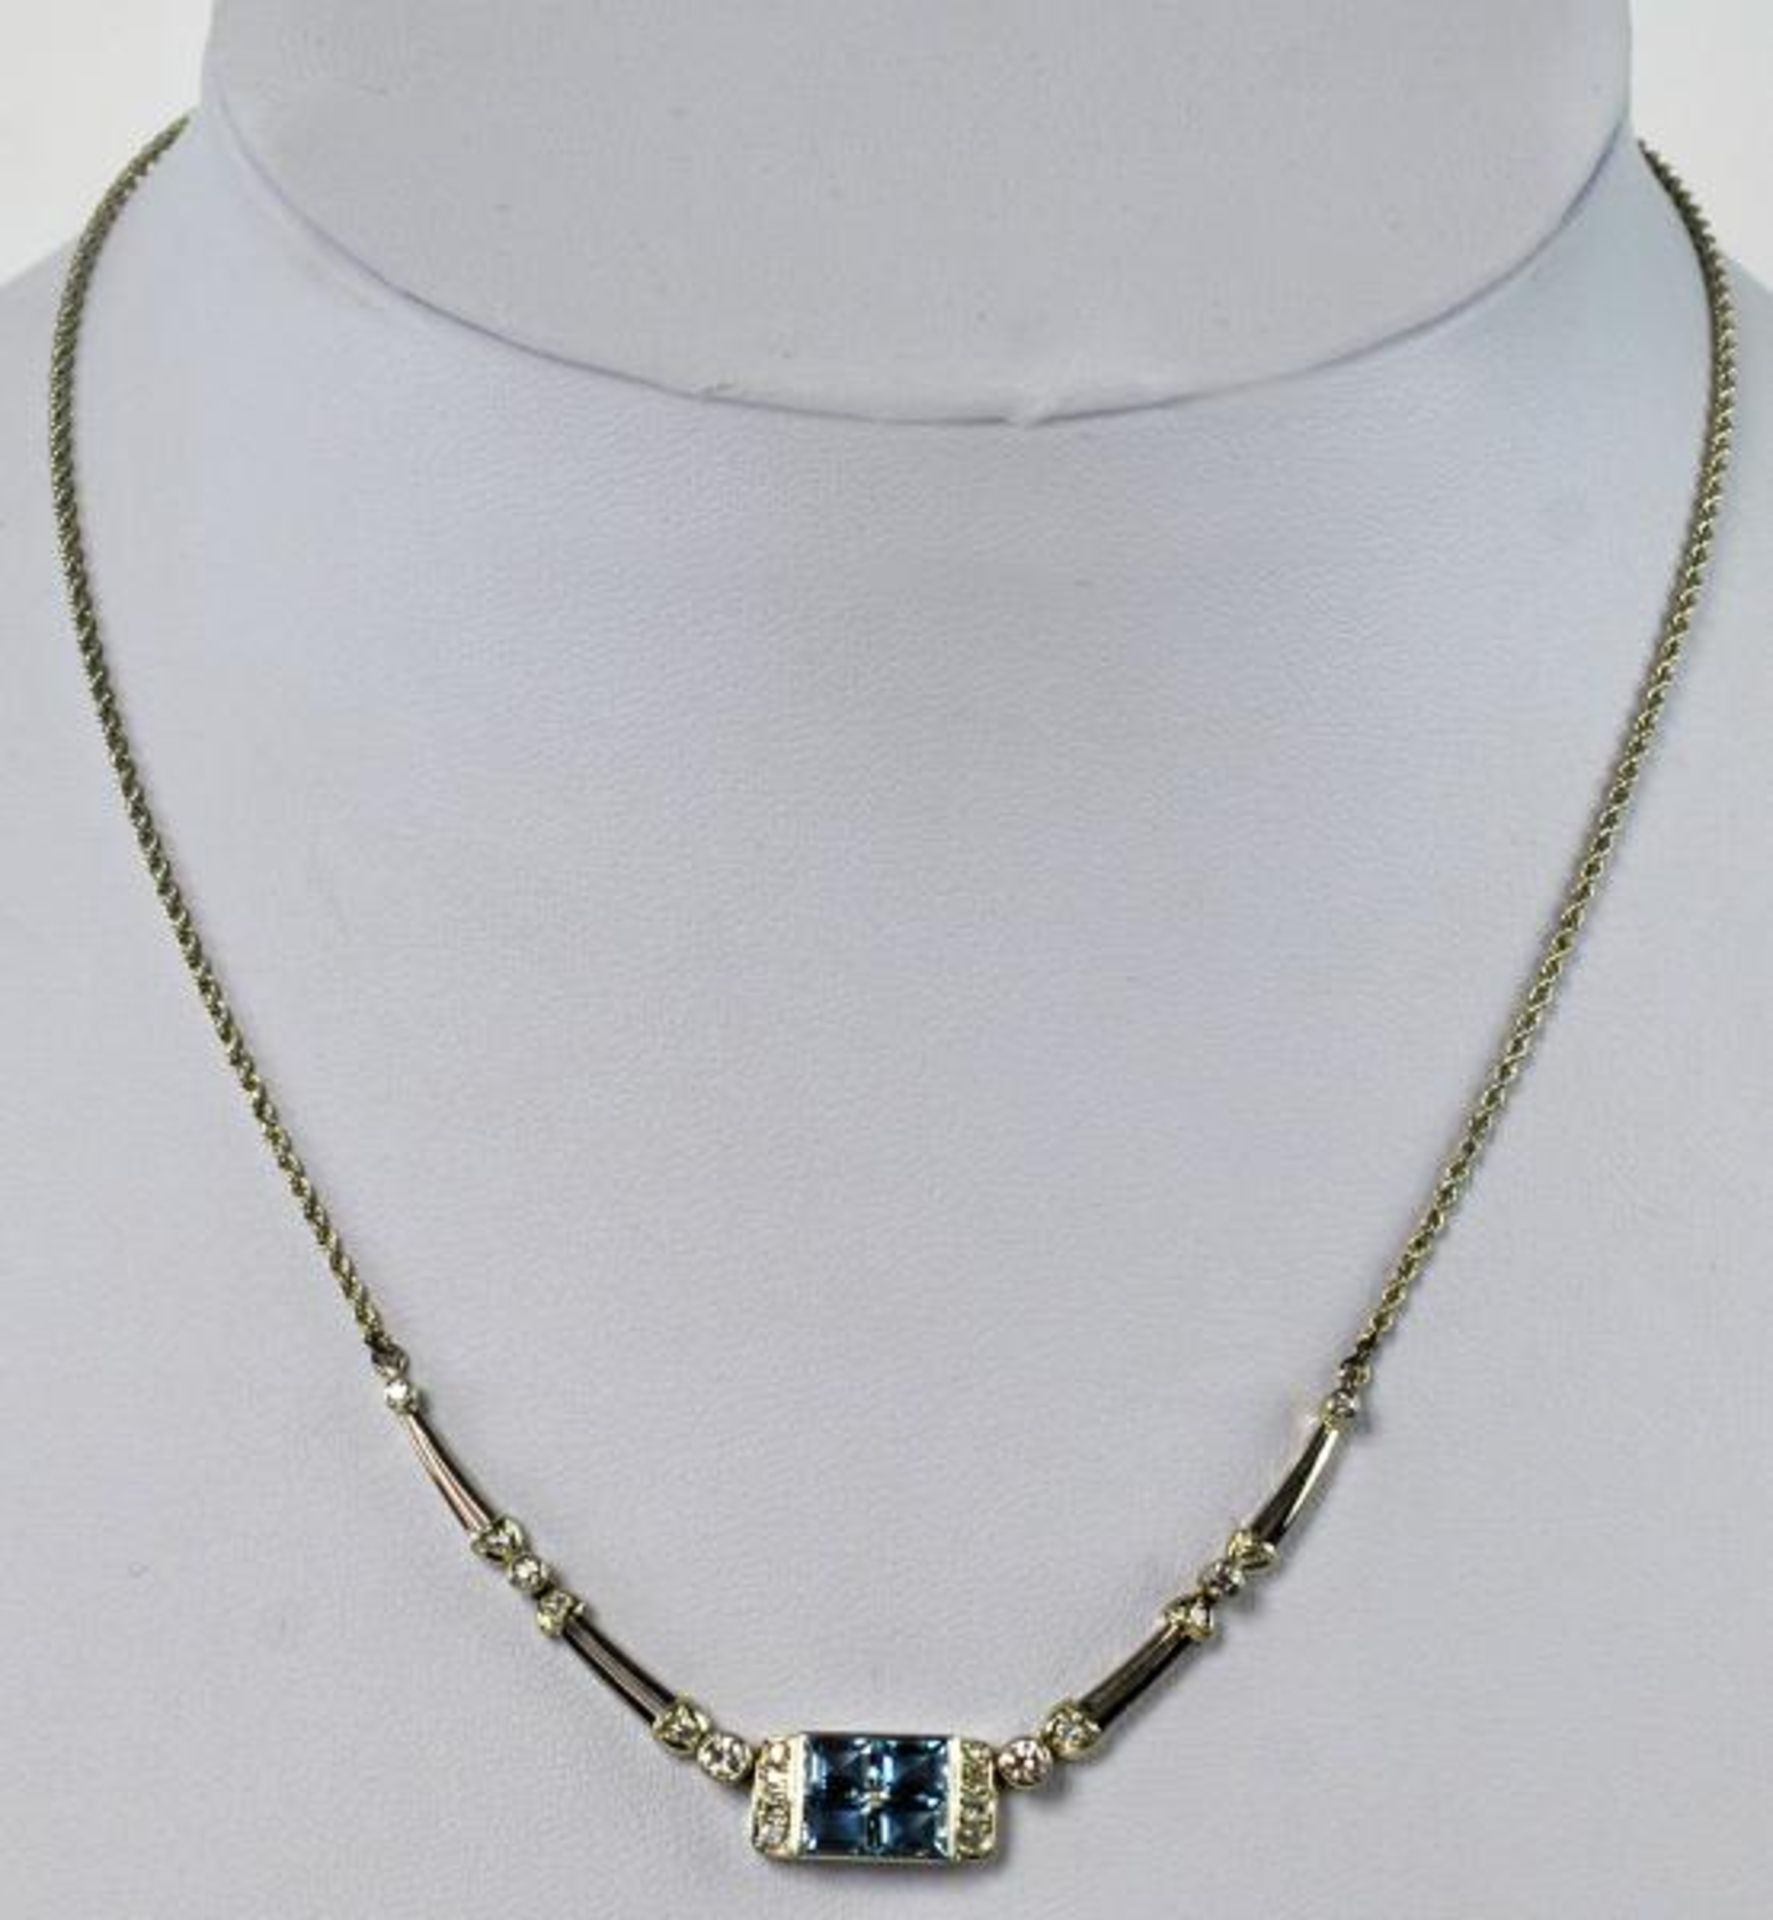 COLLIER rechteckiges Schauteil mit 4 Blautopas-Vierecken und 6 Diamanten besetzt, seitlich kleine - Bild 2 aus 2